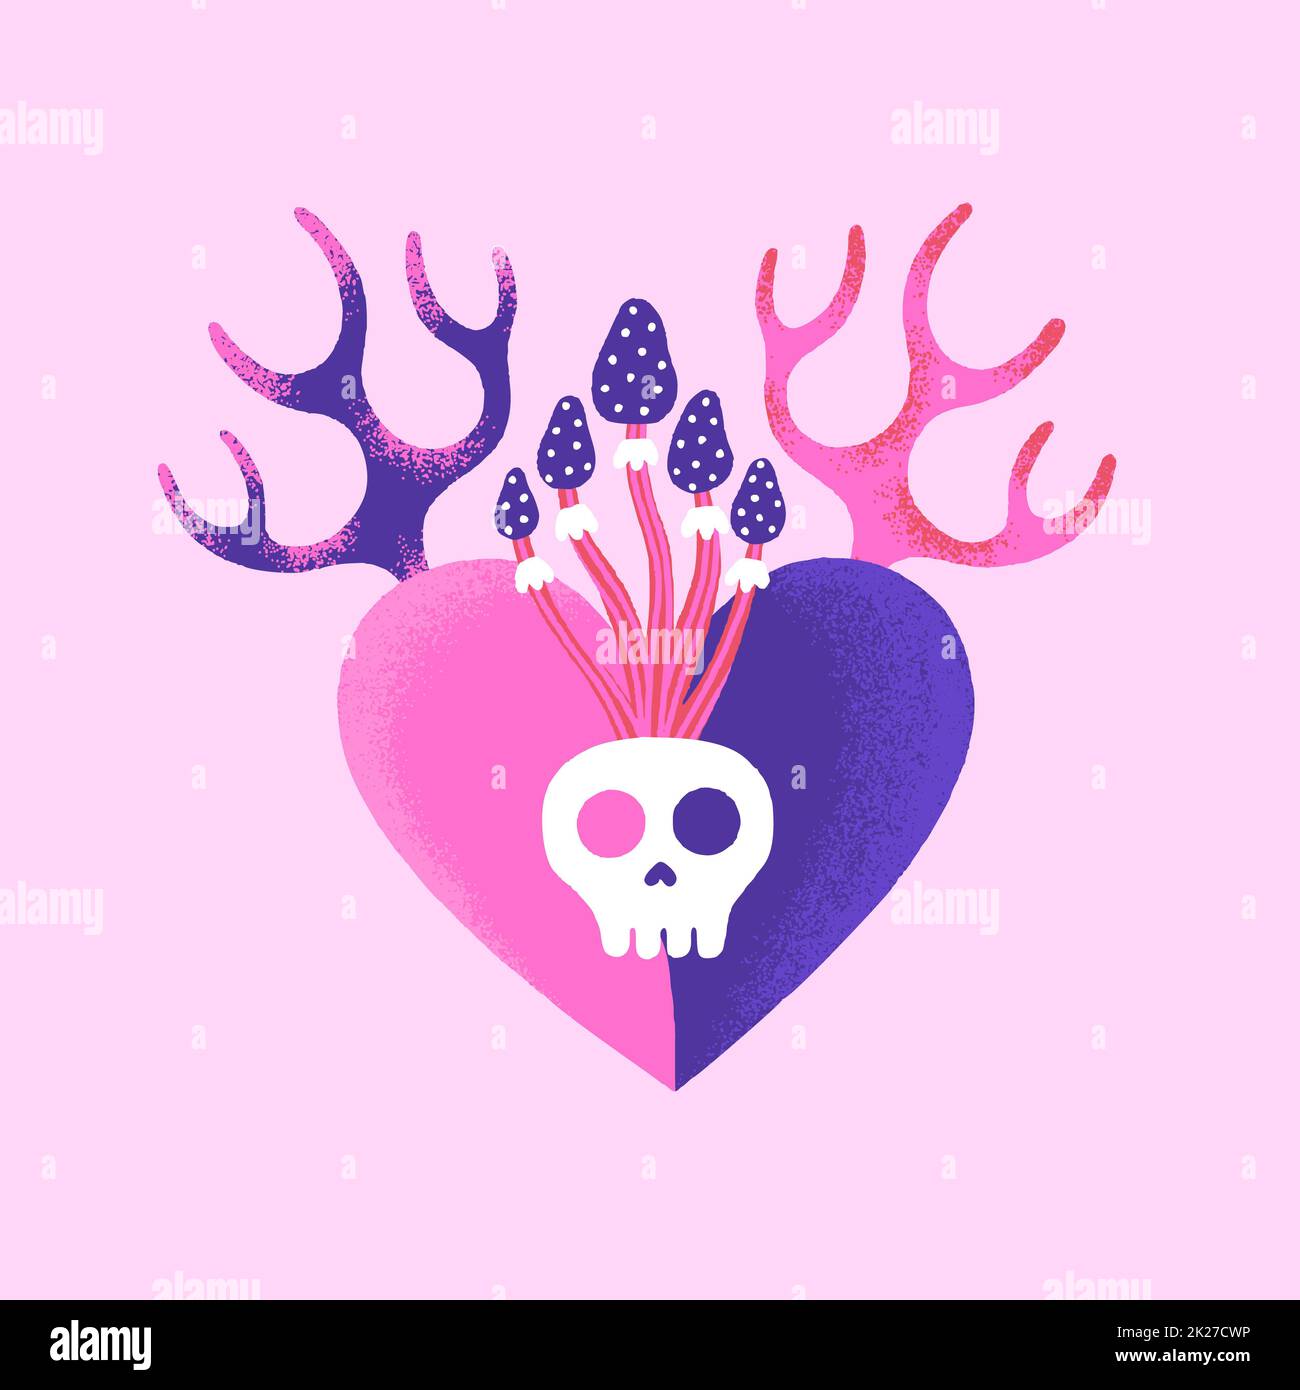 Cuore pericoloso. Carta creativa di San Valentino. Arte contemporanea Illustrazione vettoriale mistica nei colori rosa e viola Foto Stock